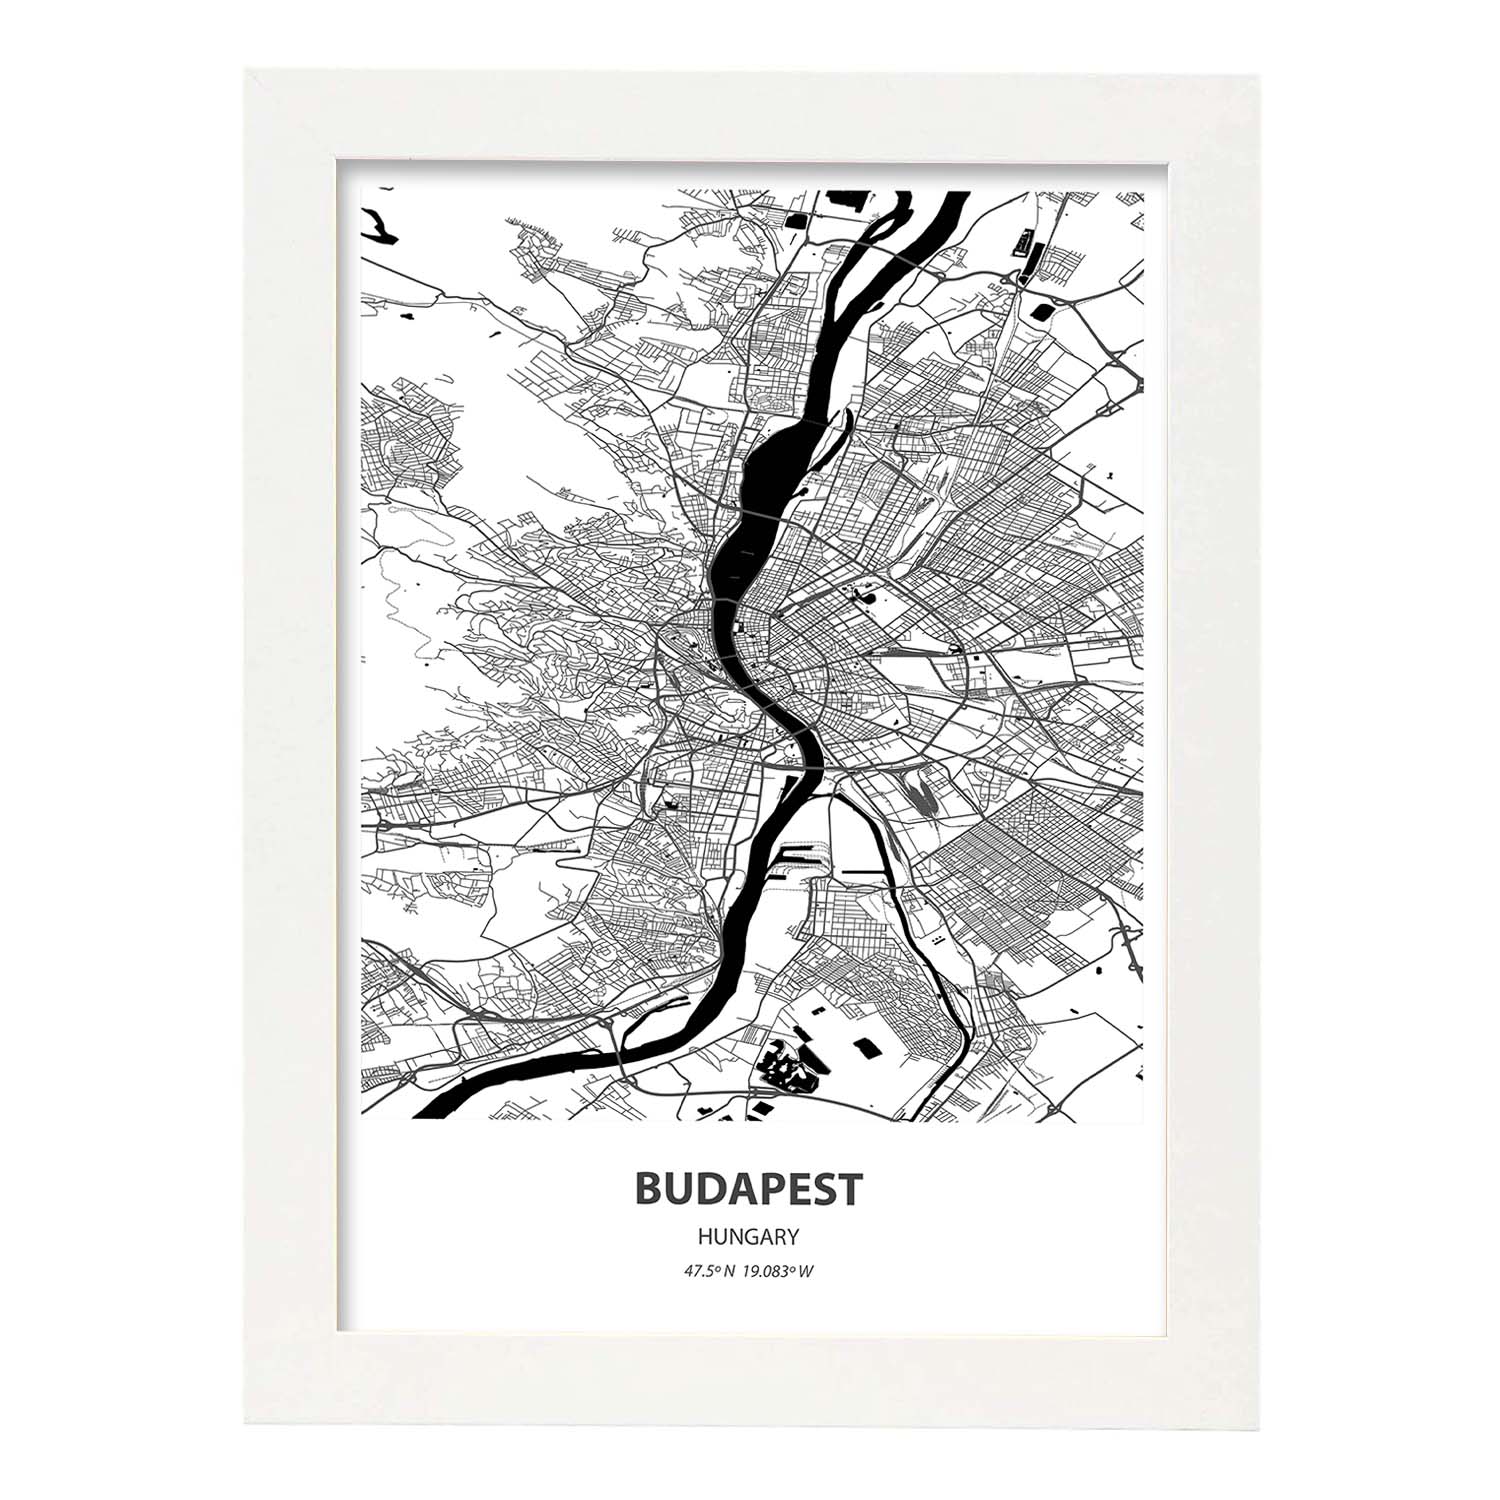 Poster con mapa de Budapest - Hungria. Láminas de ciudades de Europa con mares y ríos en color negro.-Artwork-Nacnic-A3-Marco Blanco-Nacnic Estudio SL